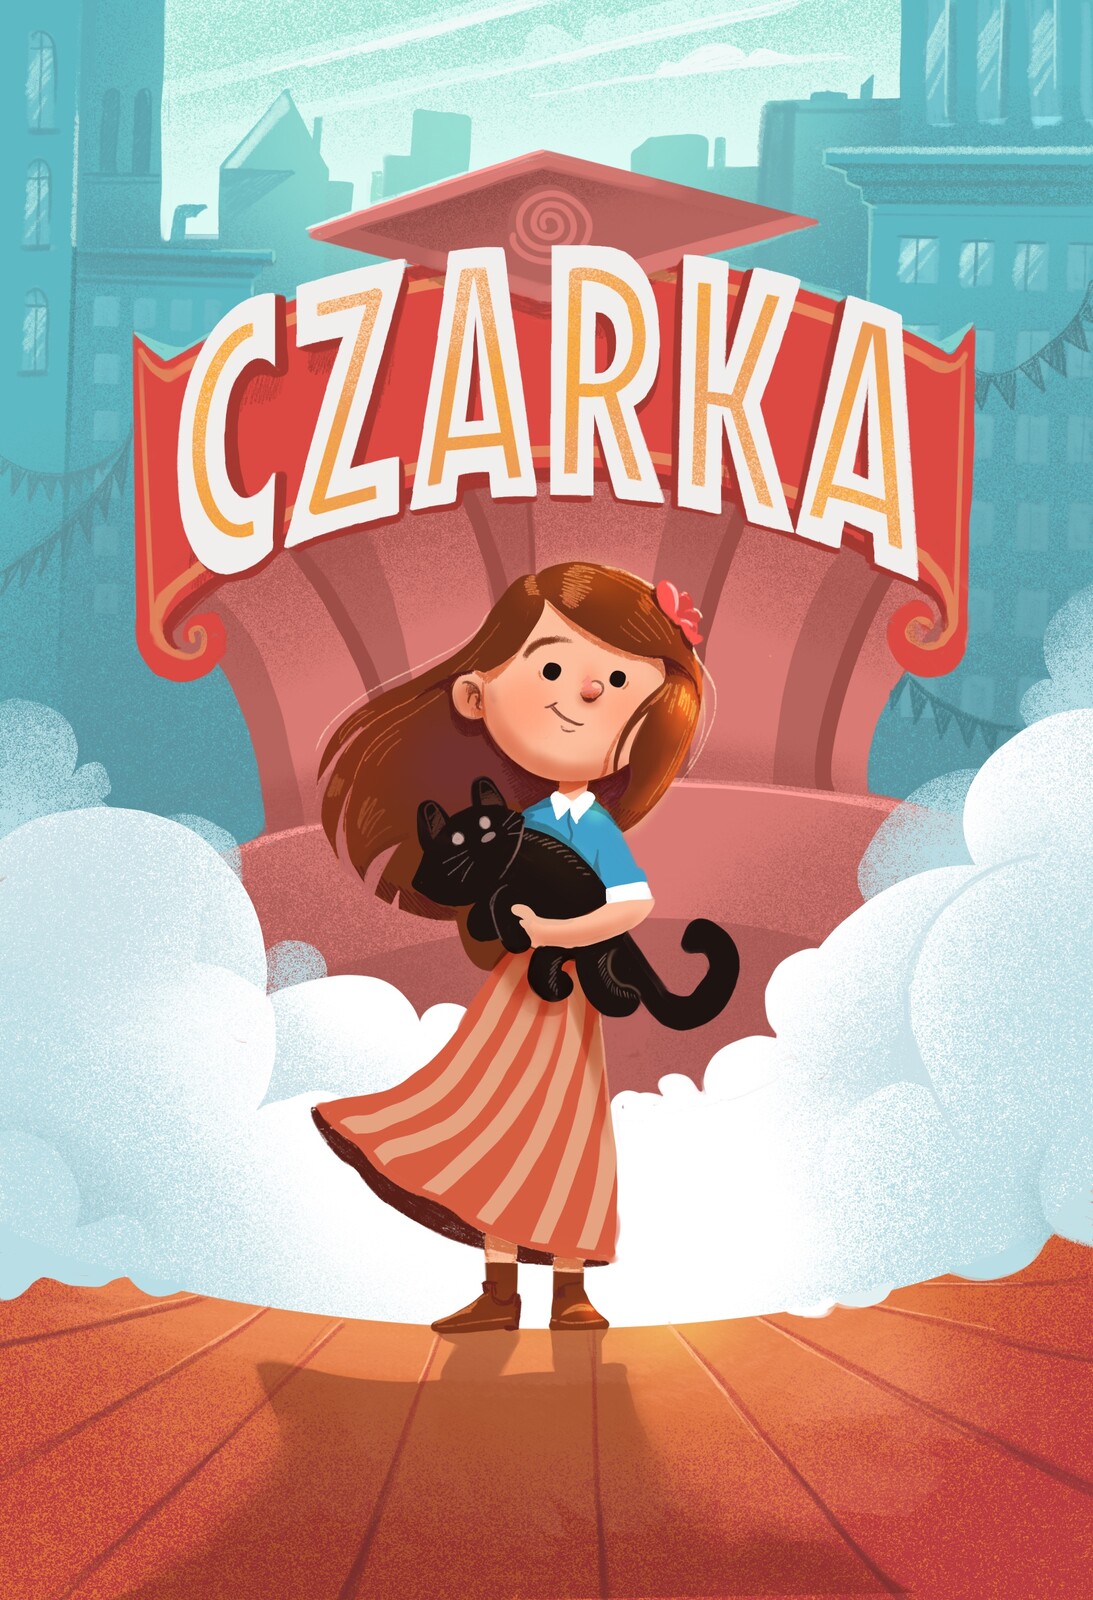 "Czarka" book